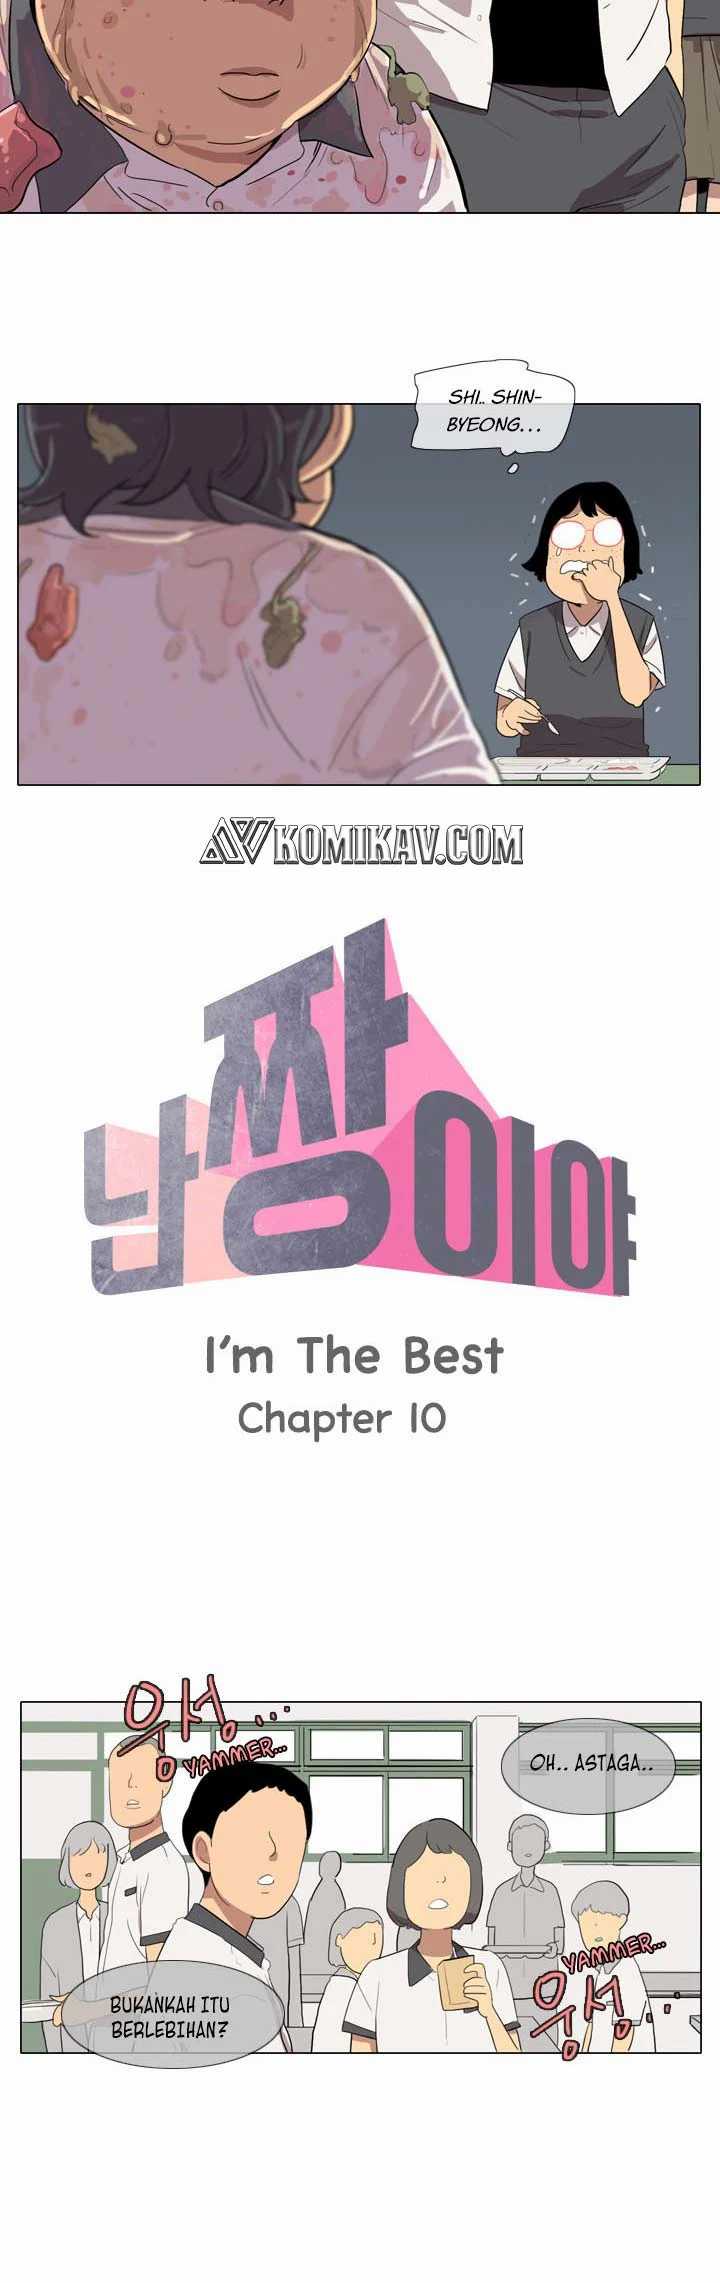 I’m da best Chapter I’m da best capter 10